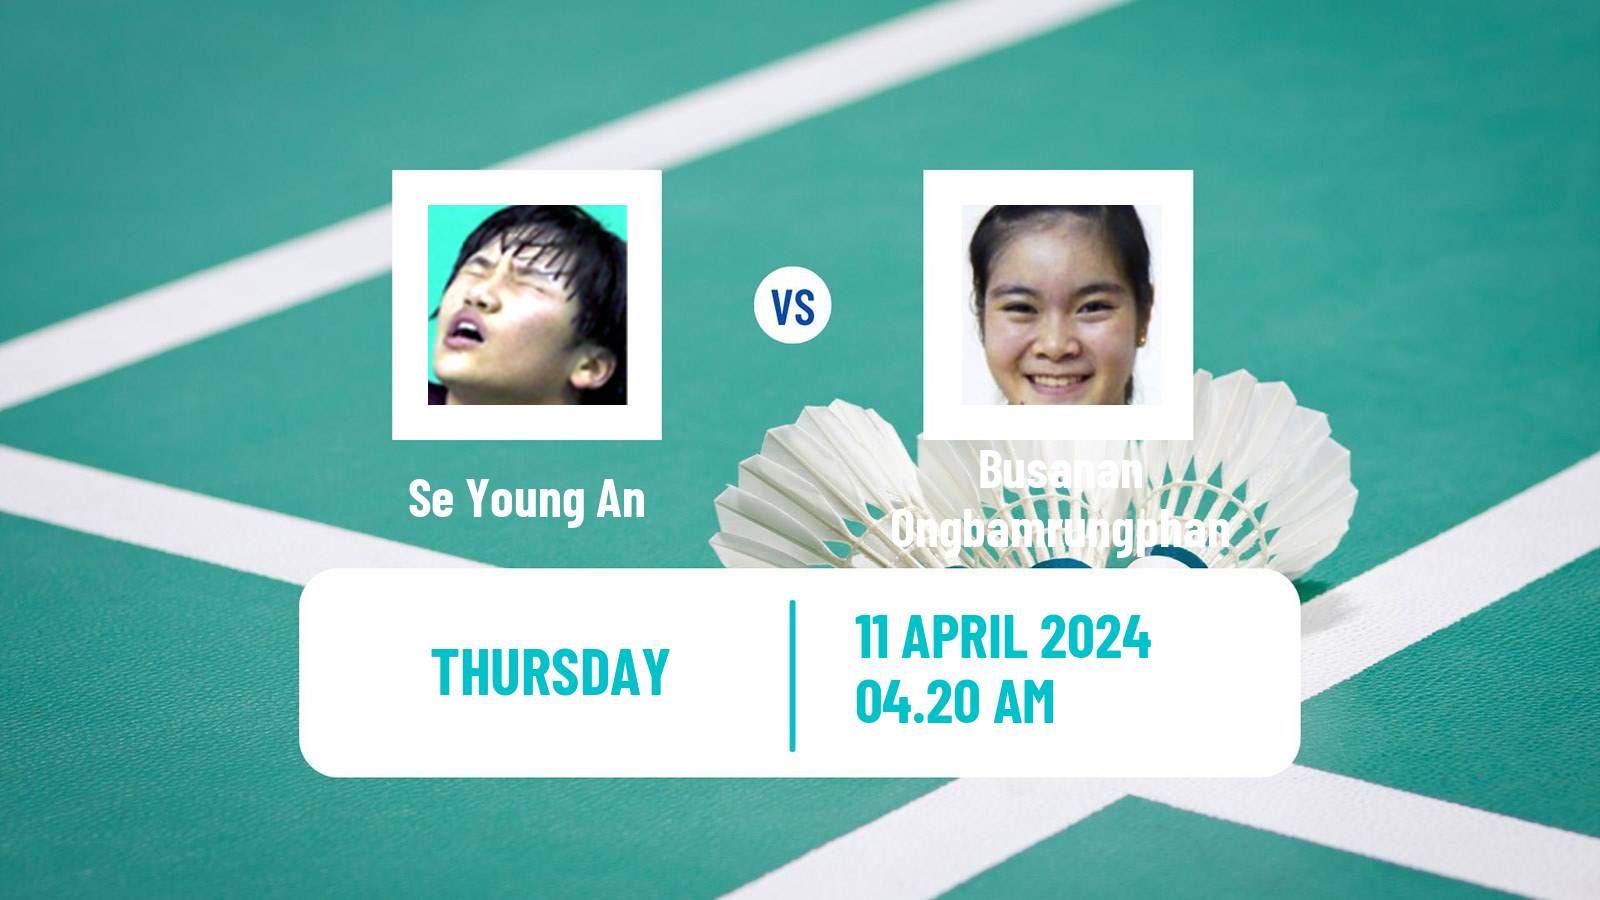 Badminton BWF Asia Championships Women Se Young An - Busanan Ongbamrungphan